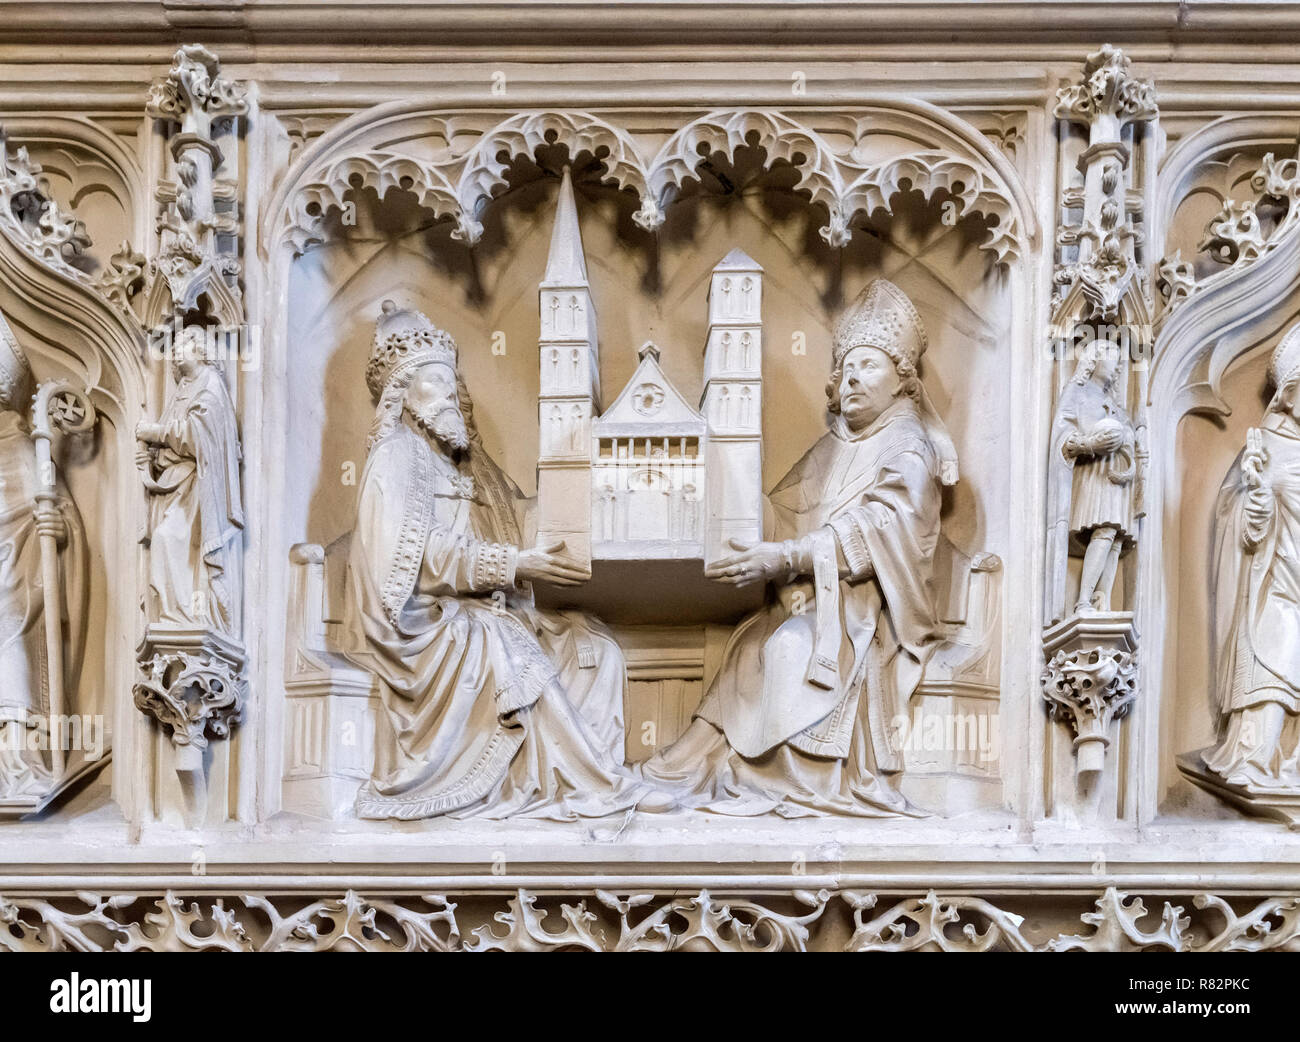 En vertu de la sculptures organ loft dans la cathédrale de Brême (St Petri Dom), Bremen, Allemagne Banque D'Images